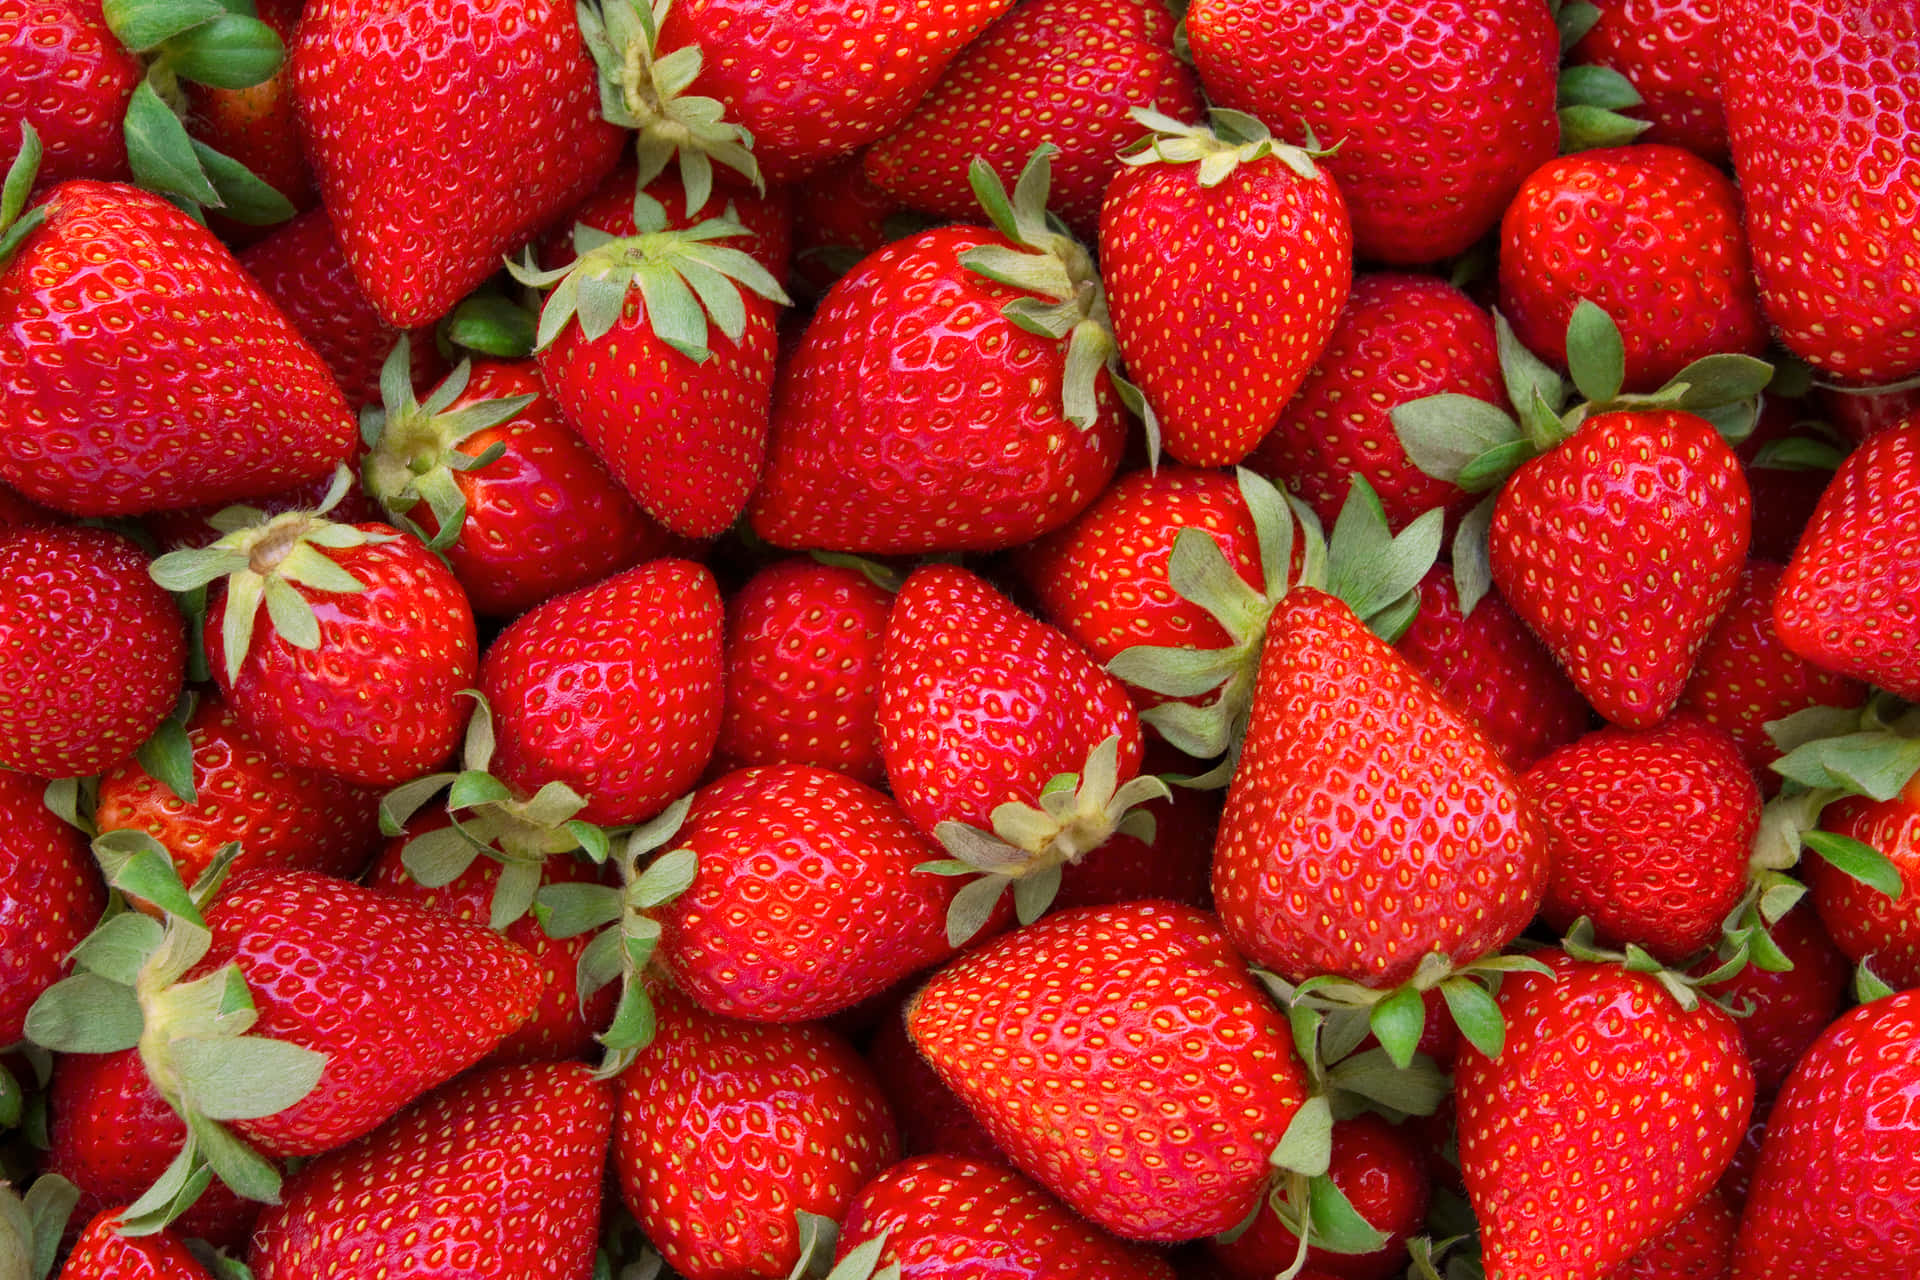 Enjoy the sweet flavor of freshly-picked strawberries